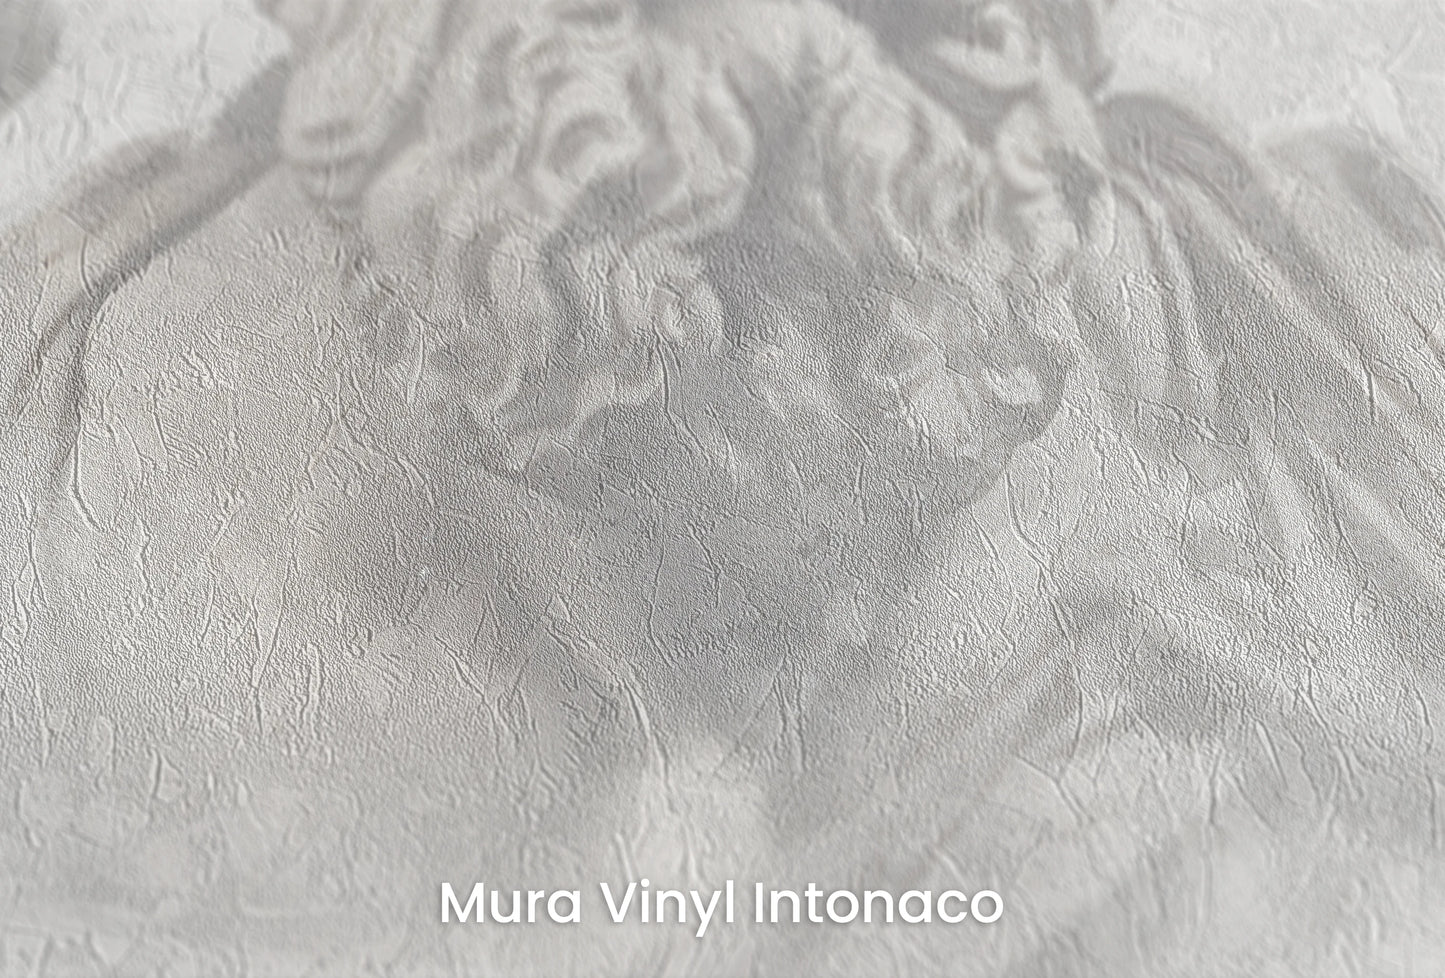 Zbliżenie na artystyczną fototapetę o nazwie Poseidon's Realm na podłożu Mura Vinyl Intonaco - struktura tartego tynku.